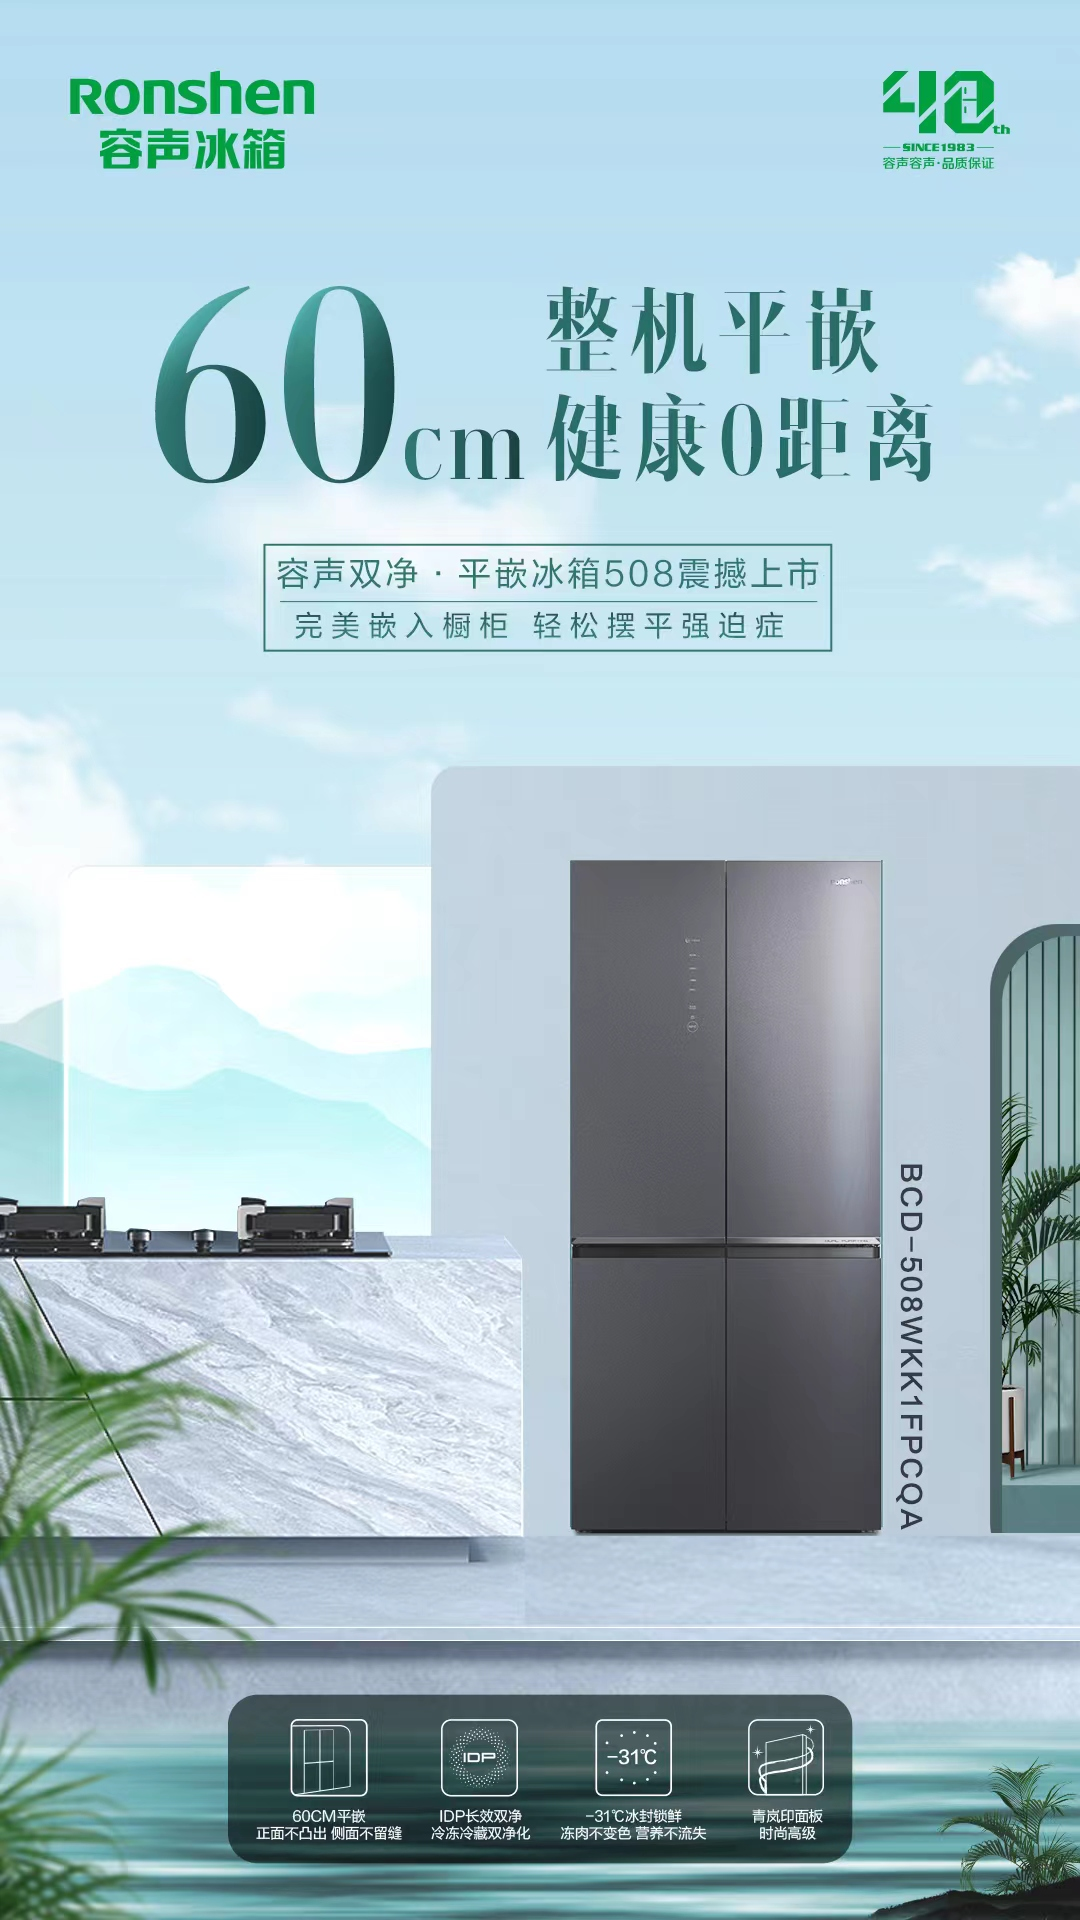 国民冰箱再添新主力 容声双净·平嵌冰箱508惊艳上市